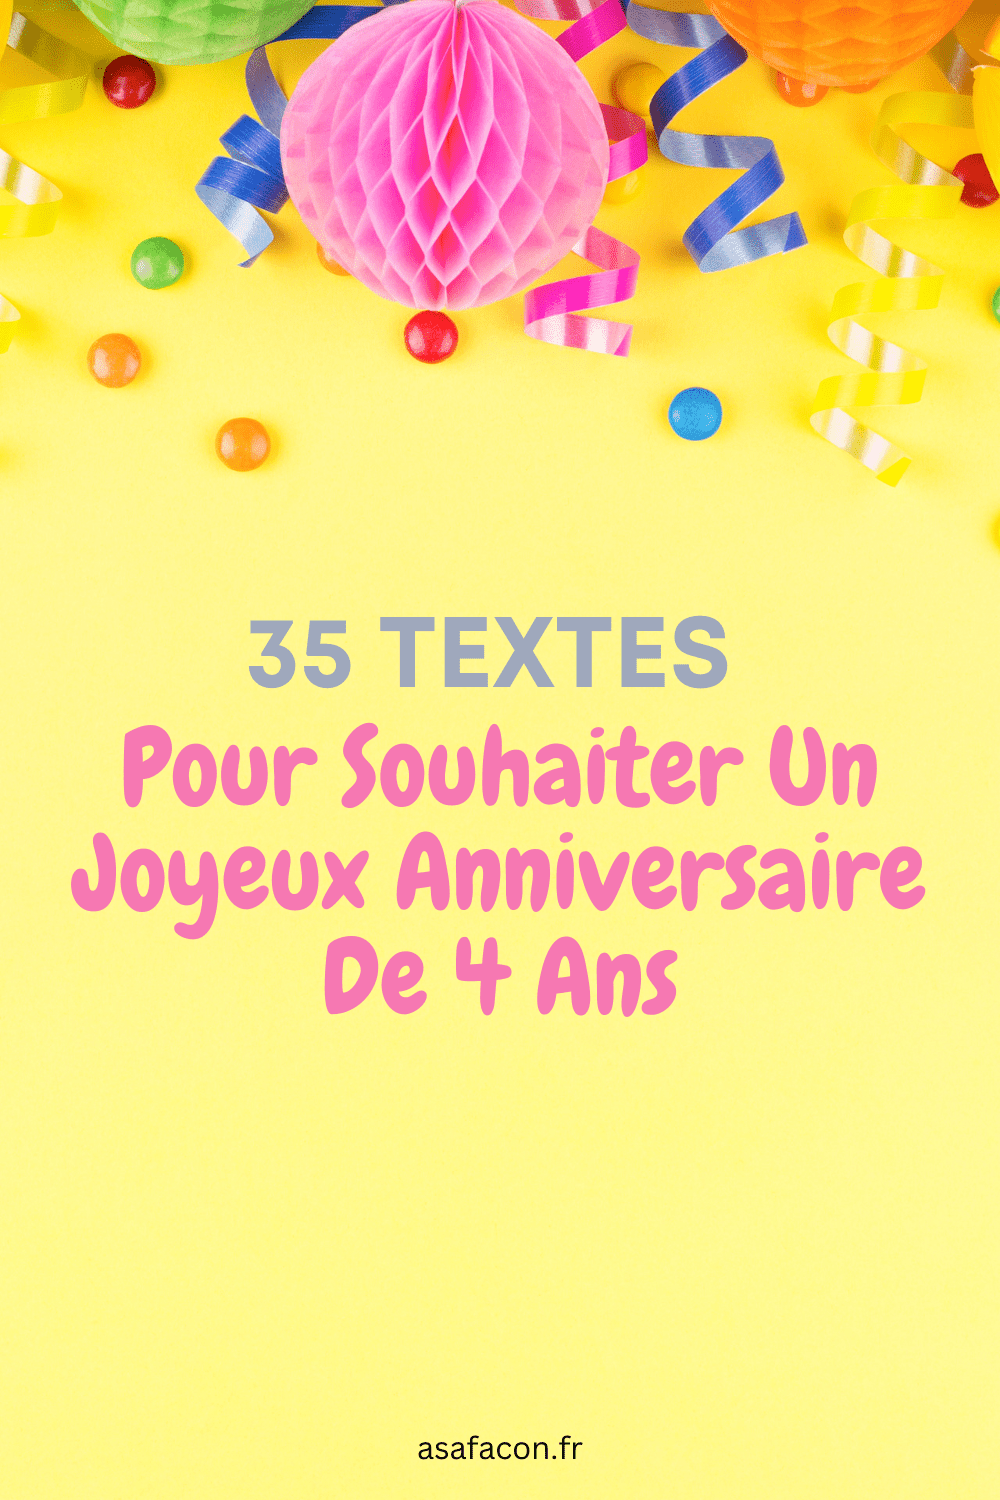 35 Textes Pour Souhaiter Un Joyeux Anniversaire De 4 Ans